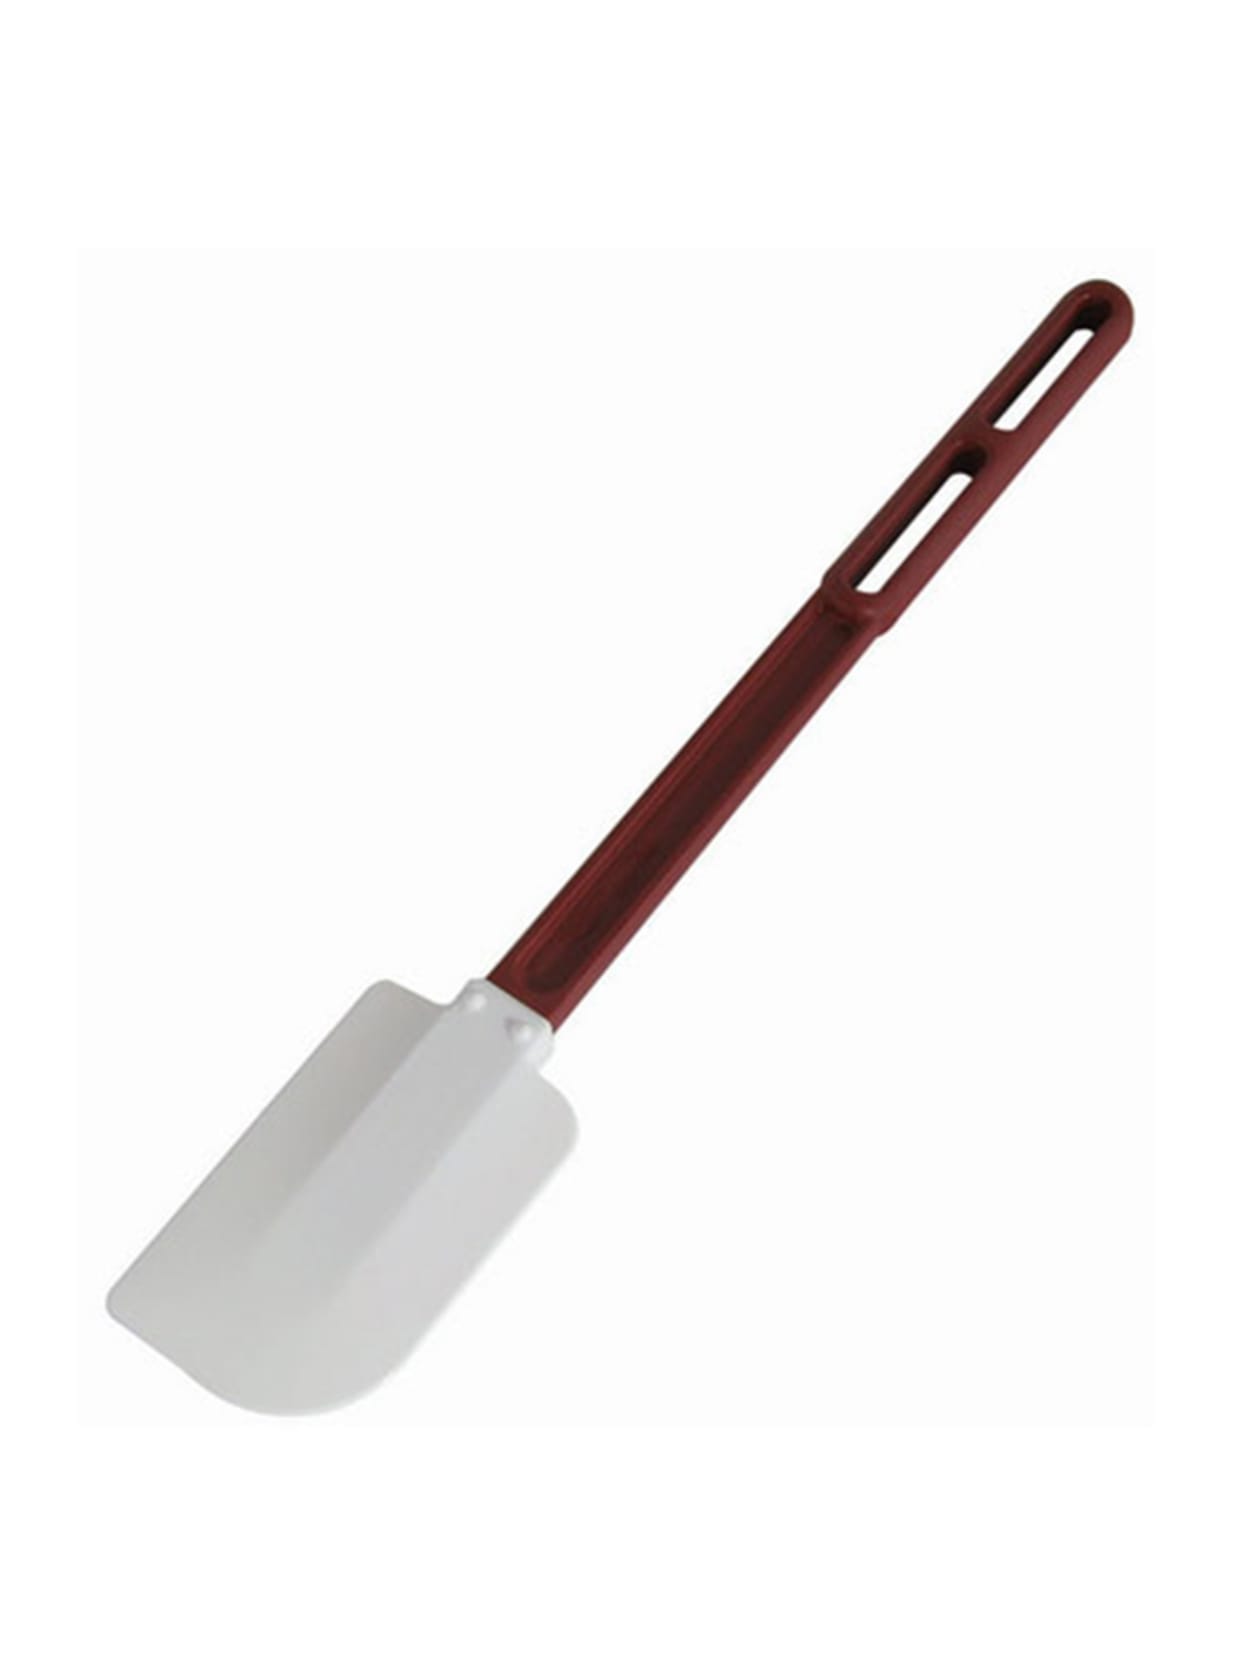 white rubber spatula